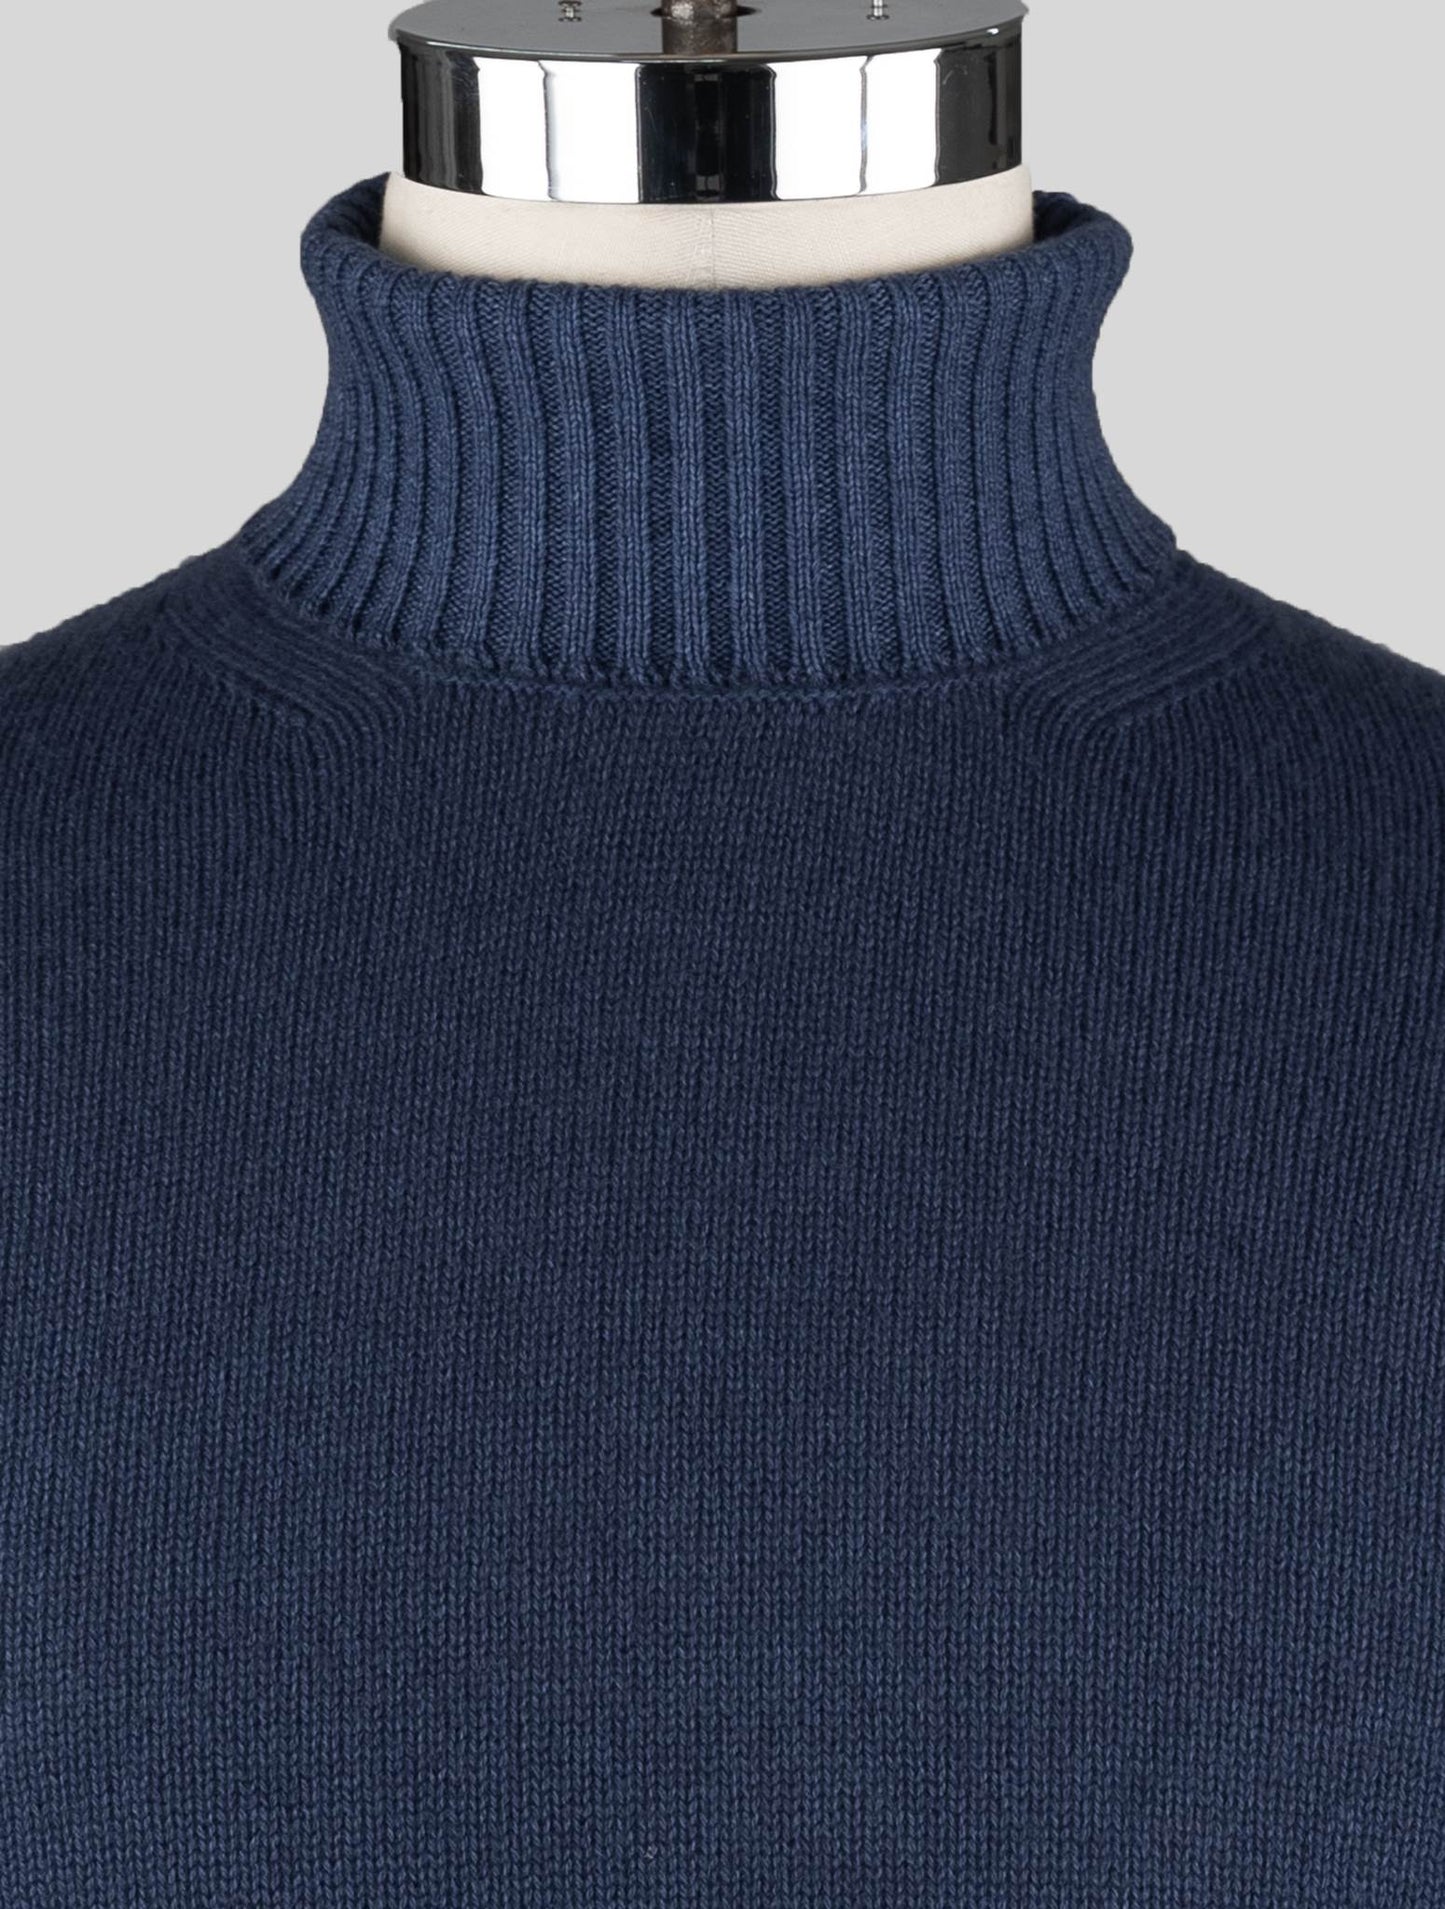 Malo Blue Jersey de lana virgen cuello alto